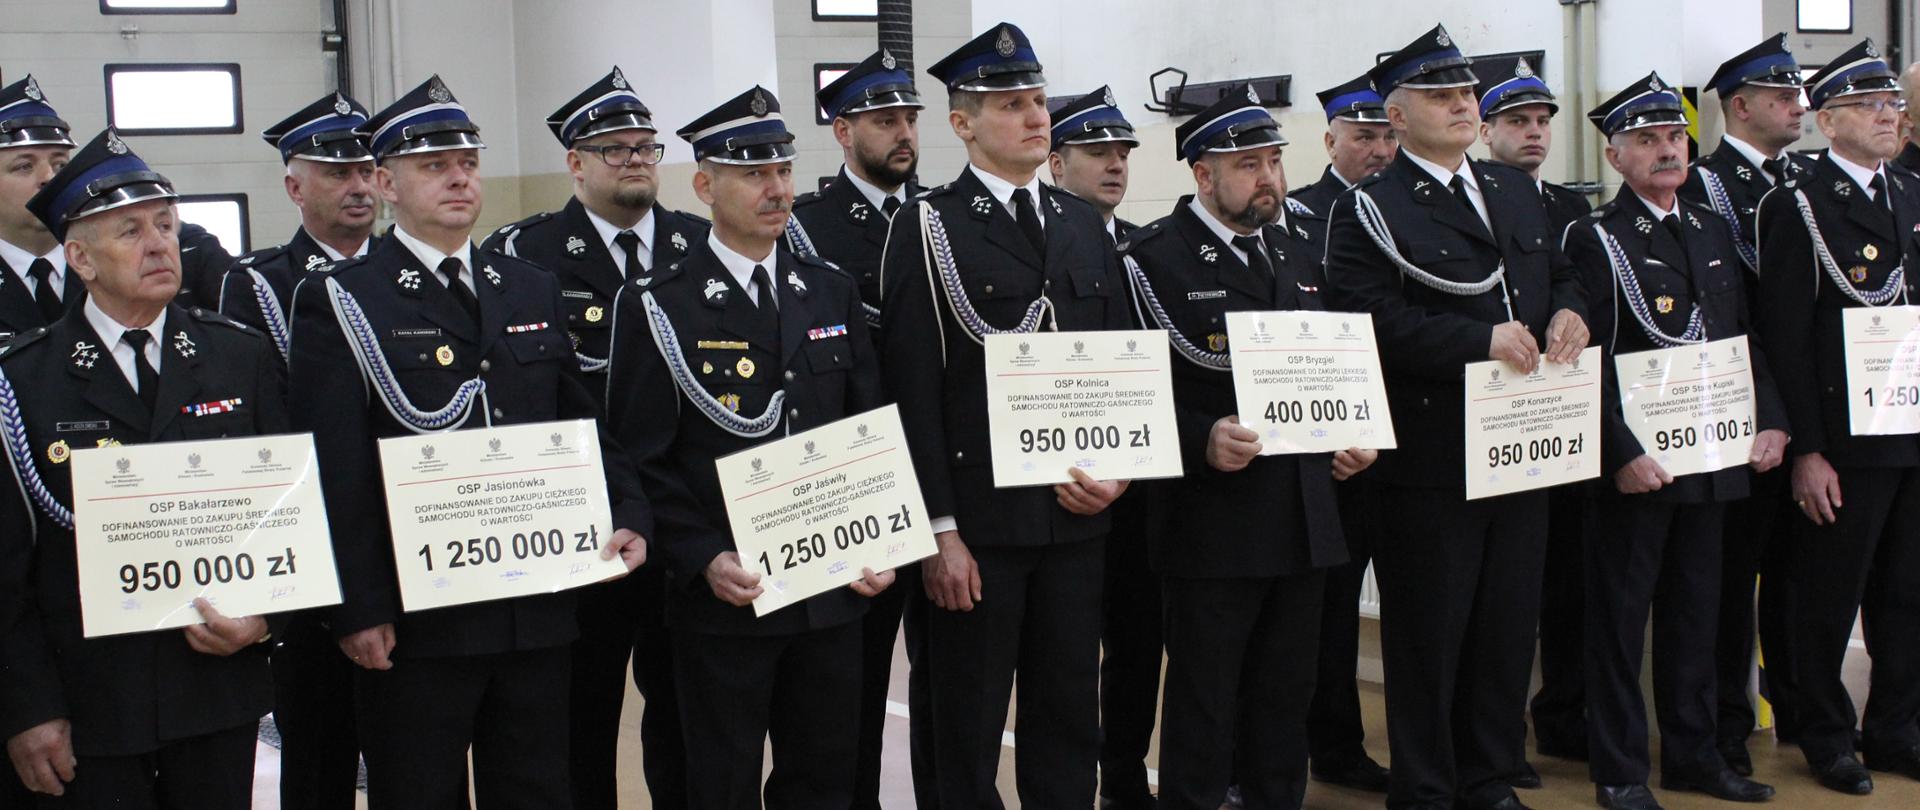 zdjęcie grupowe przedstawicieli jednostek OSP trzymający otrzymane promesy na zakup pojazdów pożarniczych 